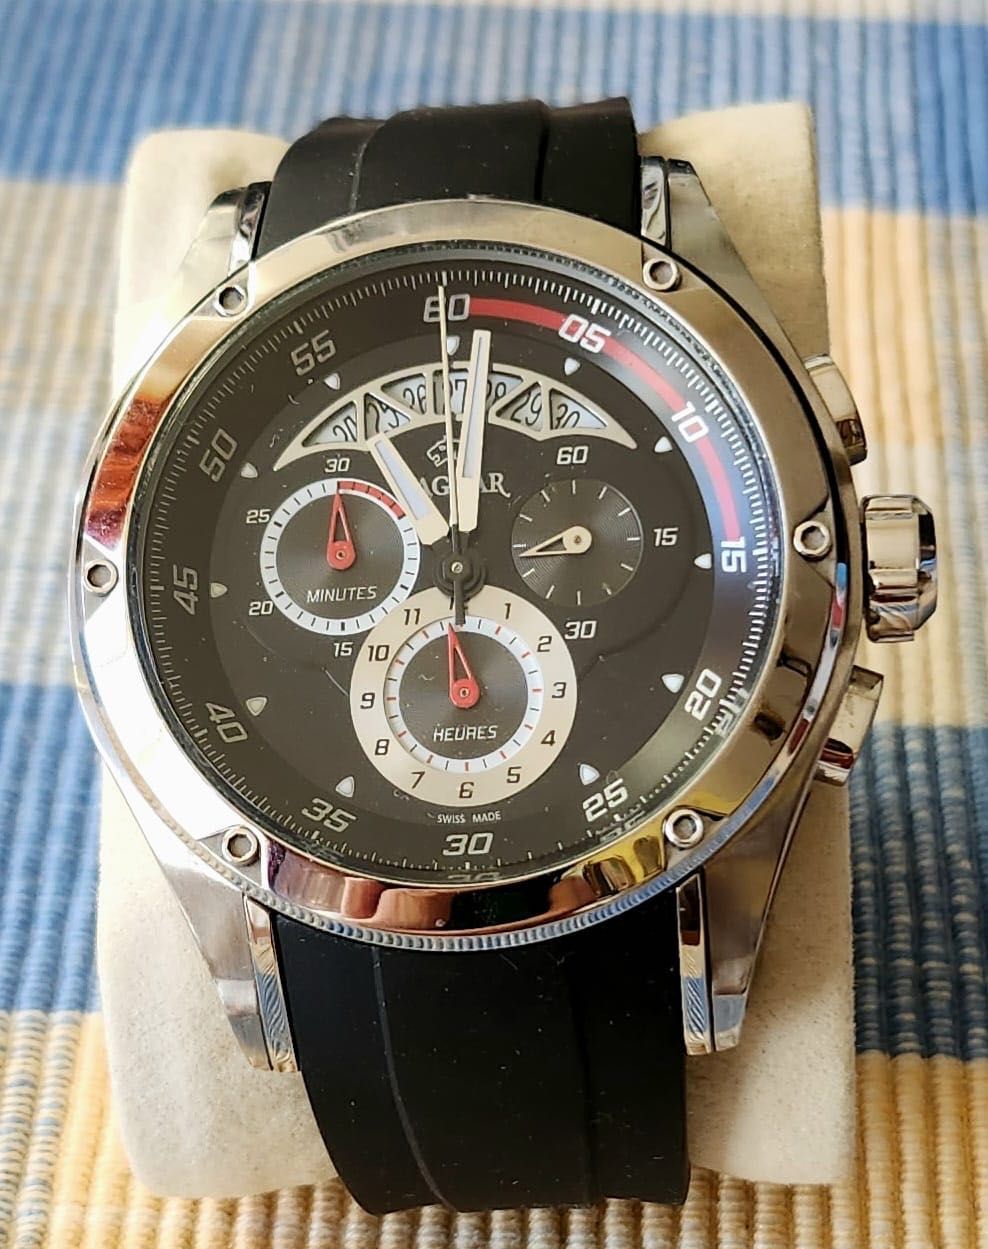 Ceas de mână Jaguar cronograf, model J650 serie limitată